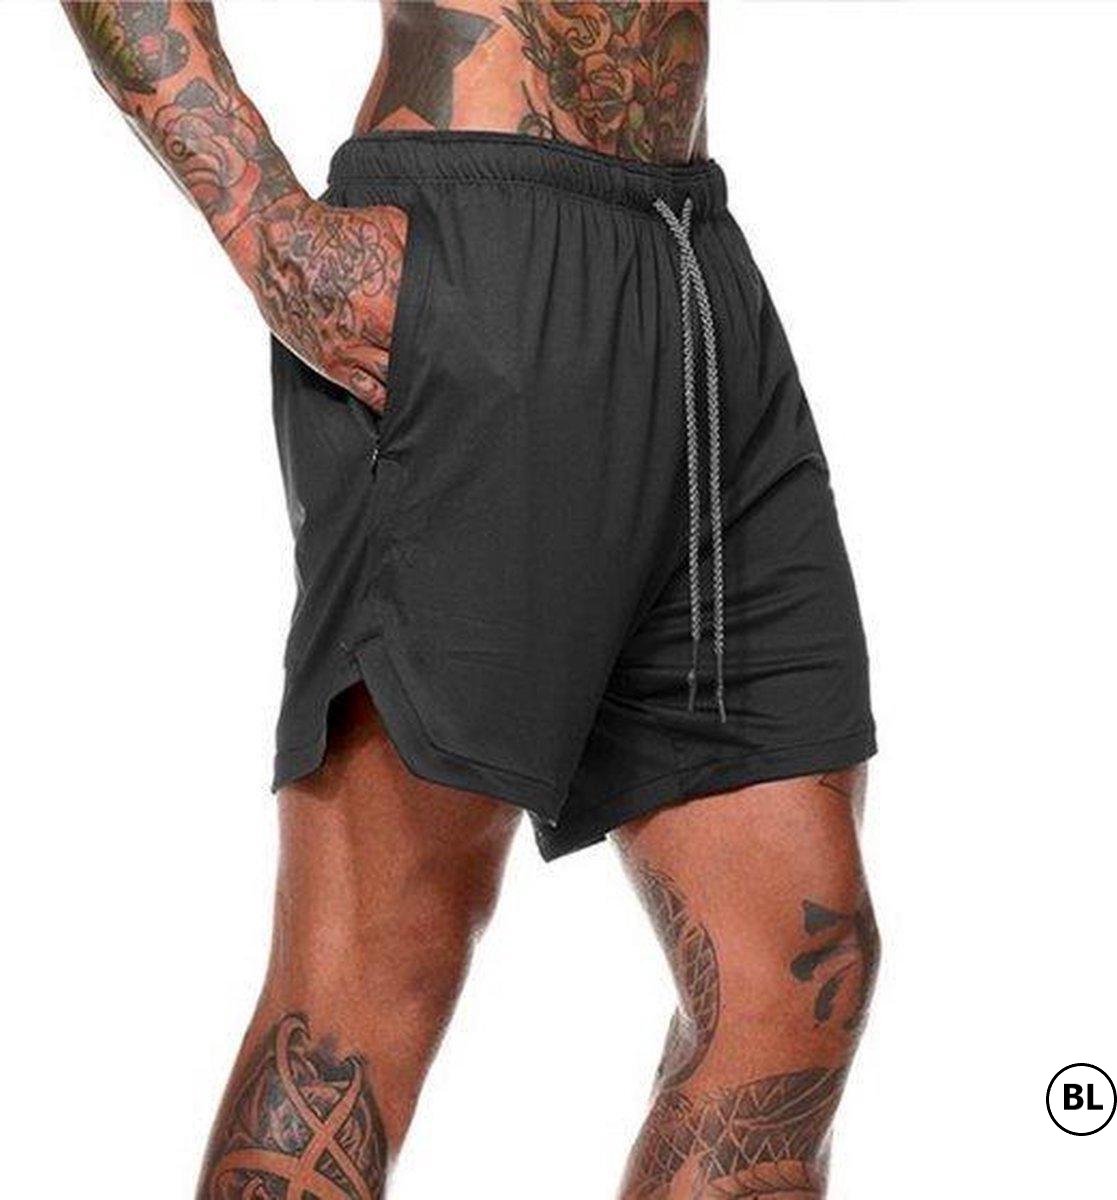 BL - Sportbroekje voor Heren - Gym broek met binnenzak voor mobiel - 2 in 1 Pocket Shorts - Running, Fitness, Sport broekje Trainingsbroek - Quick Dry - Mobiel Zak - ( Zwart - Maat XL ))